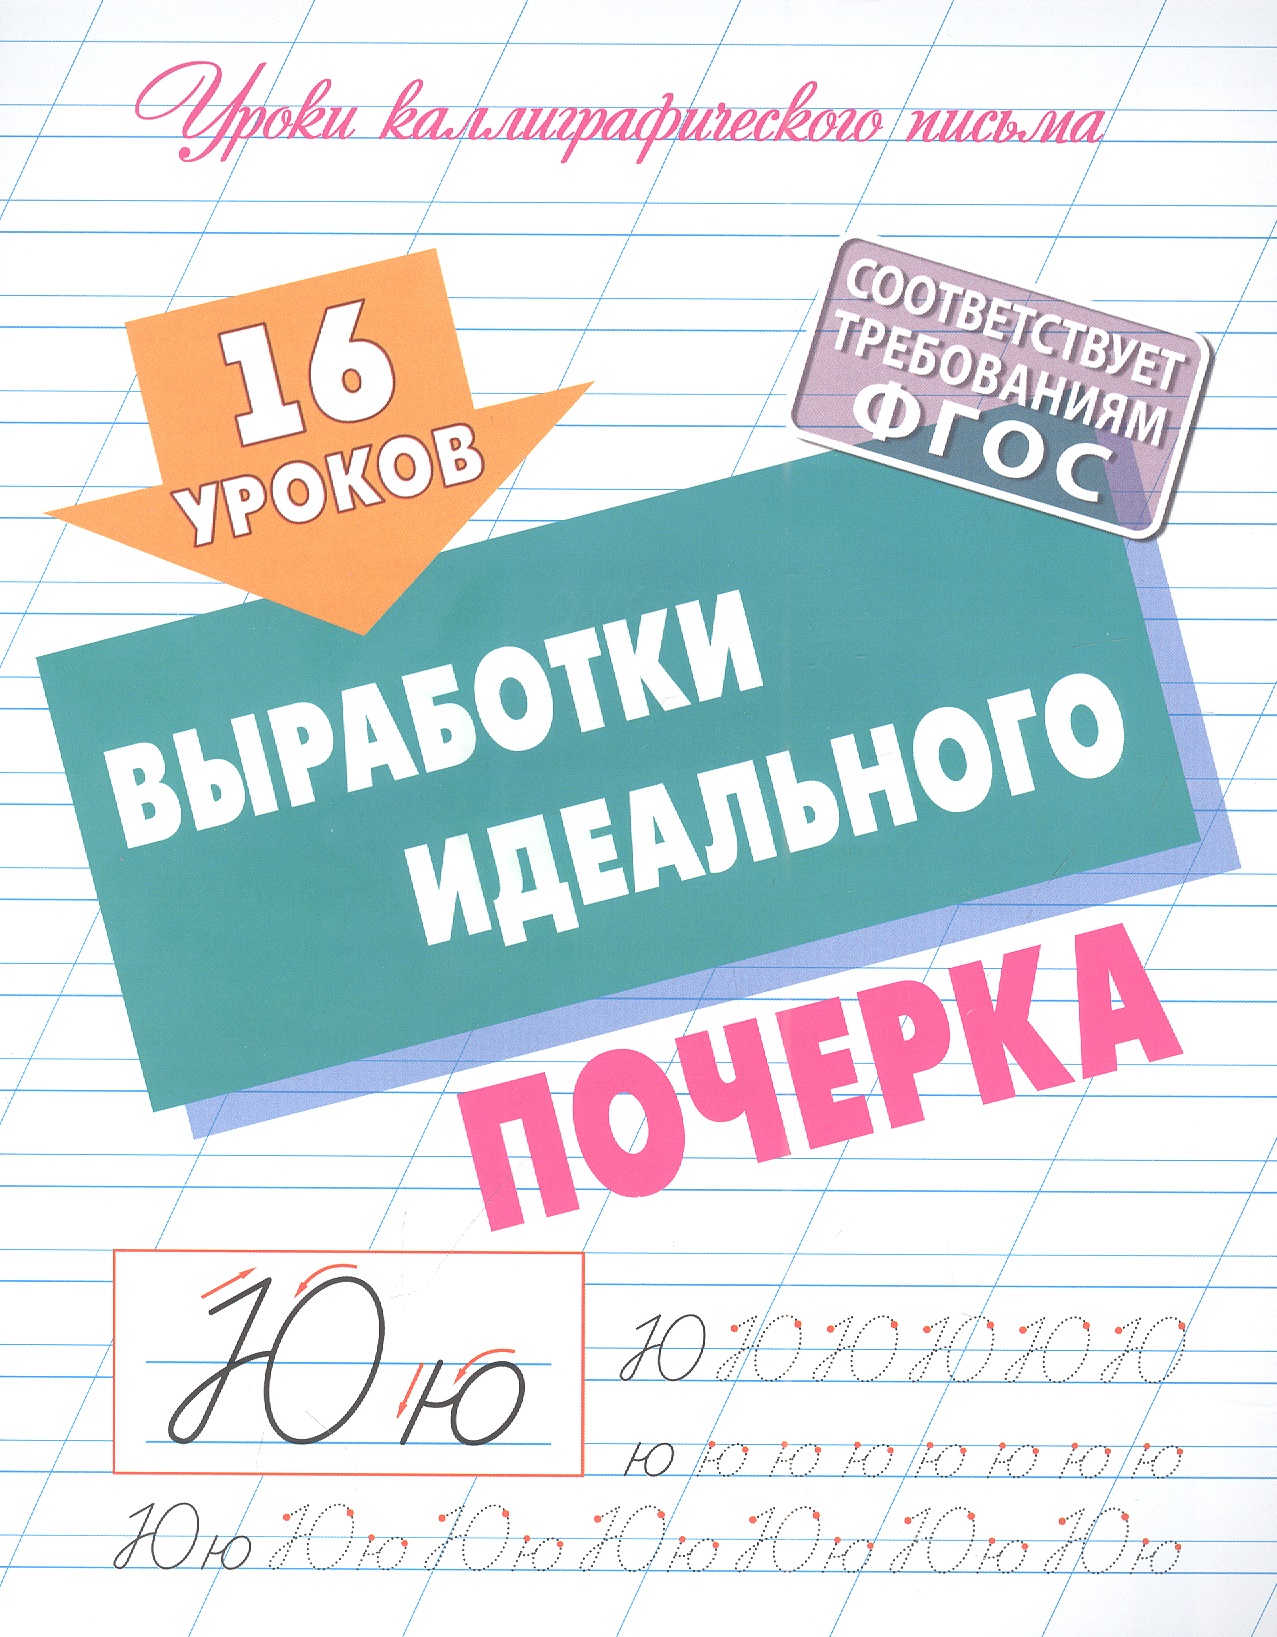 Петренко Станислав Викторович 16 уроков выработки идеального почерка 30 уроков письма